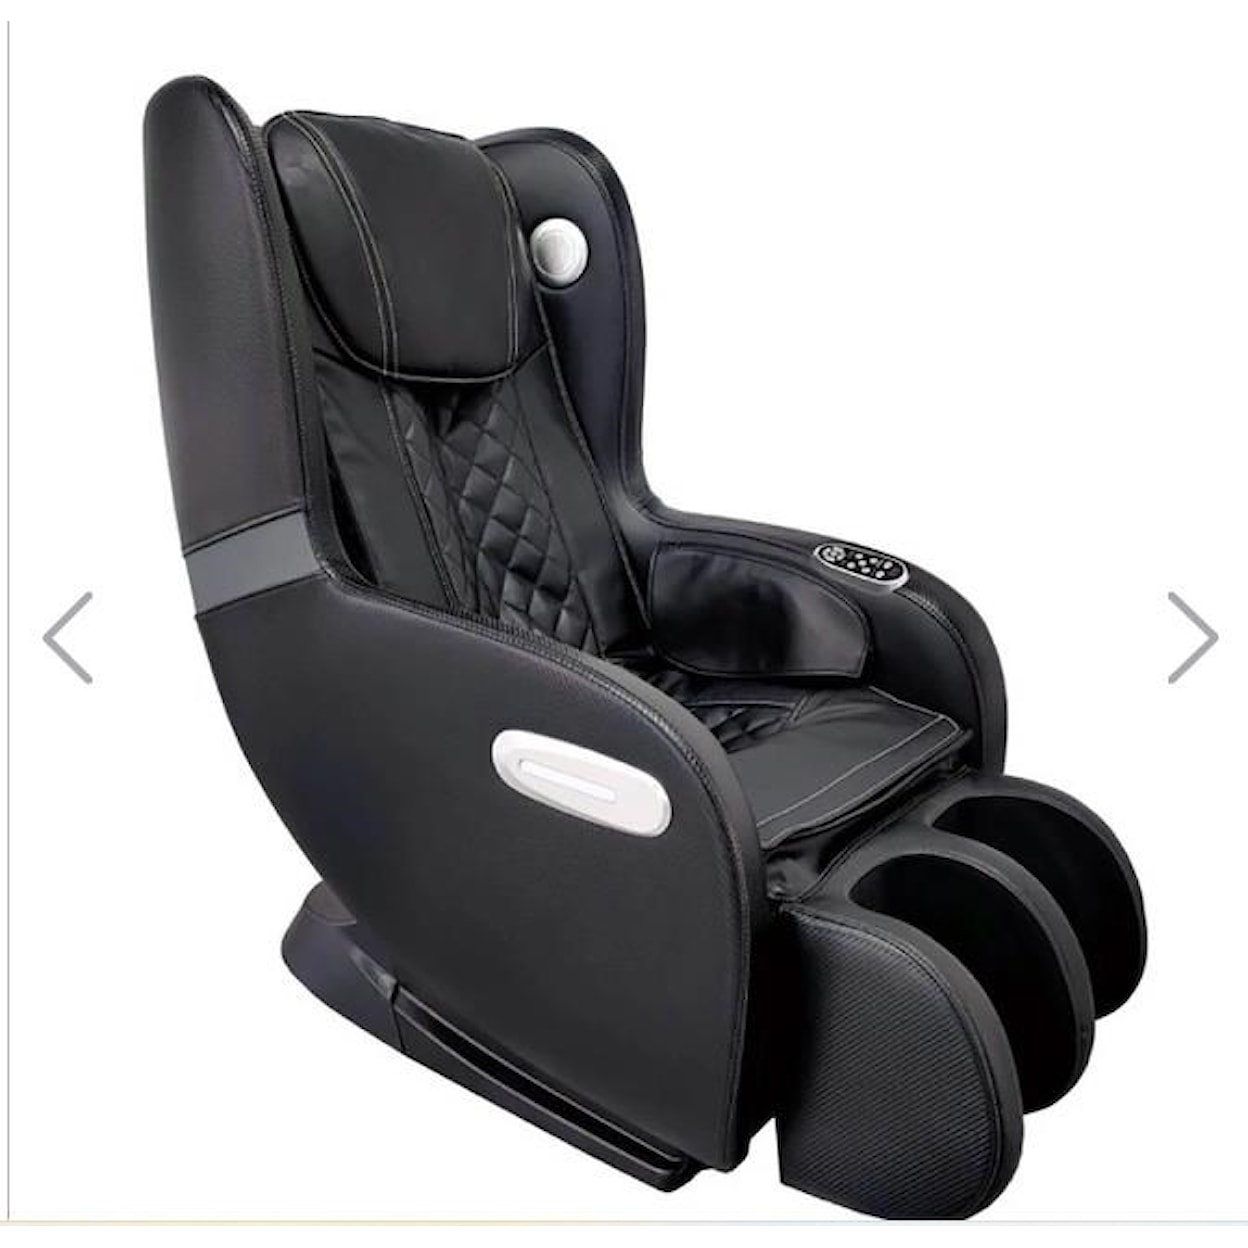 Core Nine Massage Technology 6600 Massage Chair